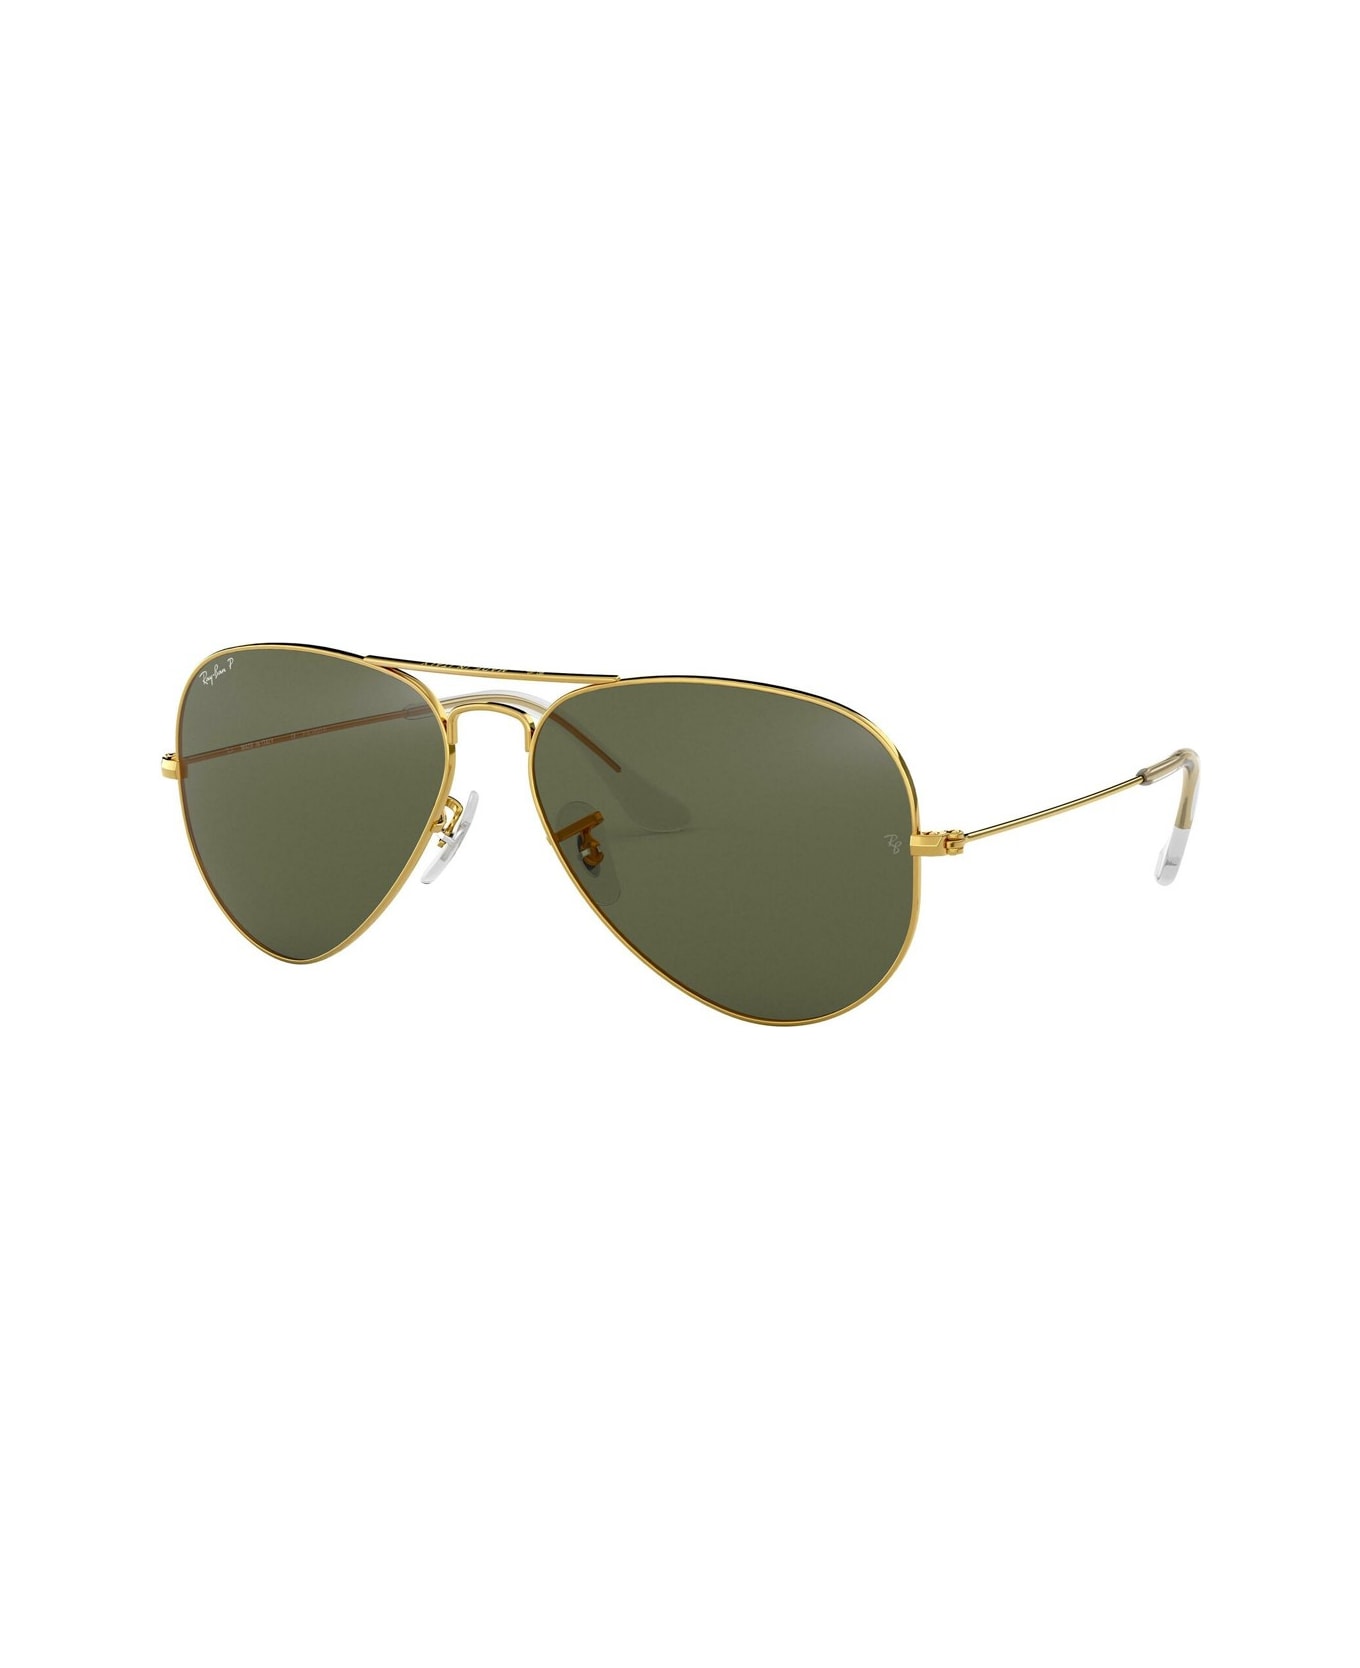 Ray-Ban Aviator Rb 3025 Polarizzato Sunglasses - Oro